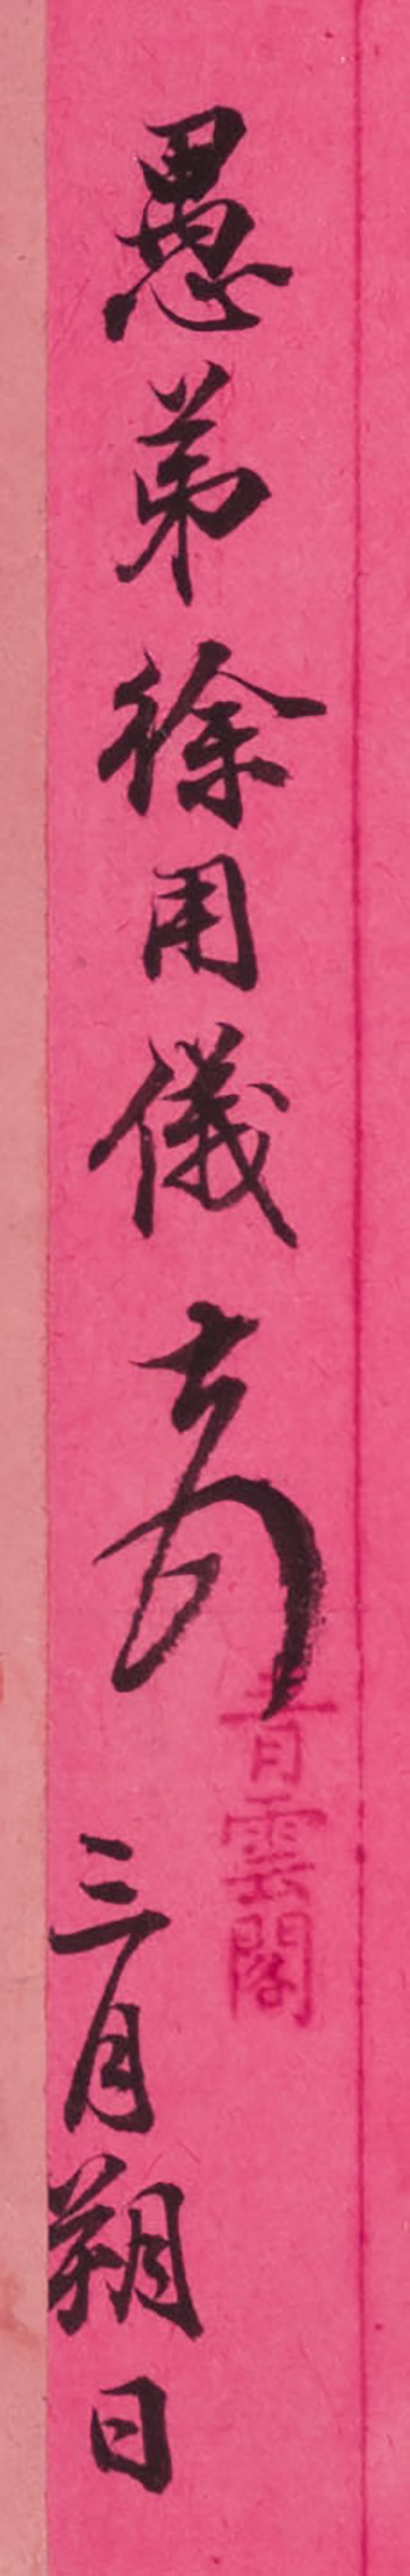 A Calligraphy Handscroll of Letters from Xu Yongyi, Xu Jingcheng, and Yuan Chang by  Various Artists